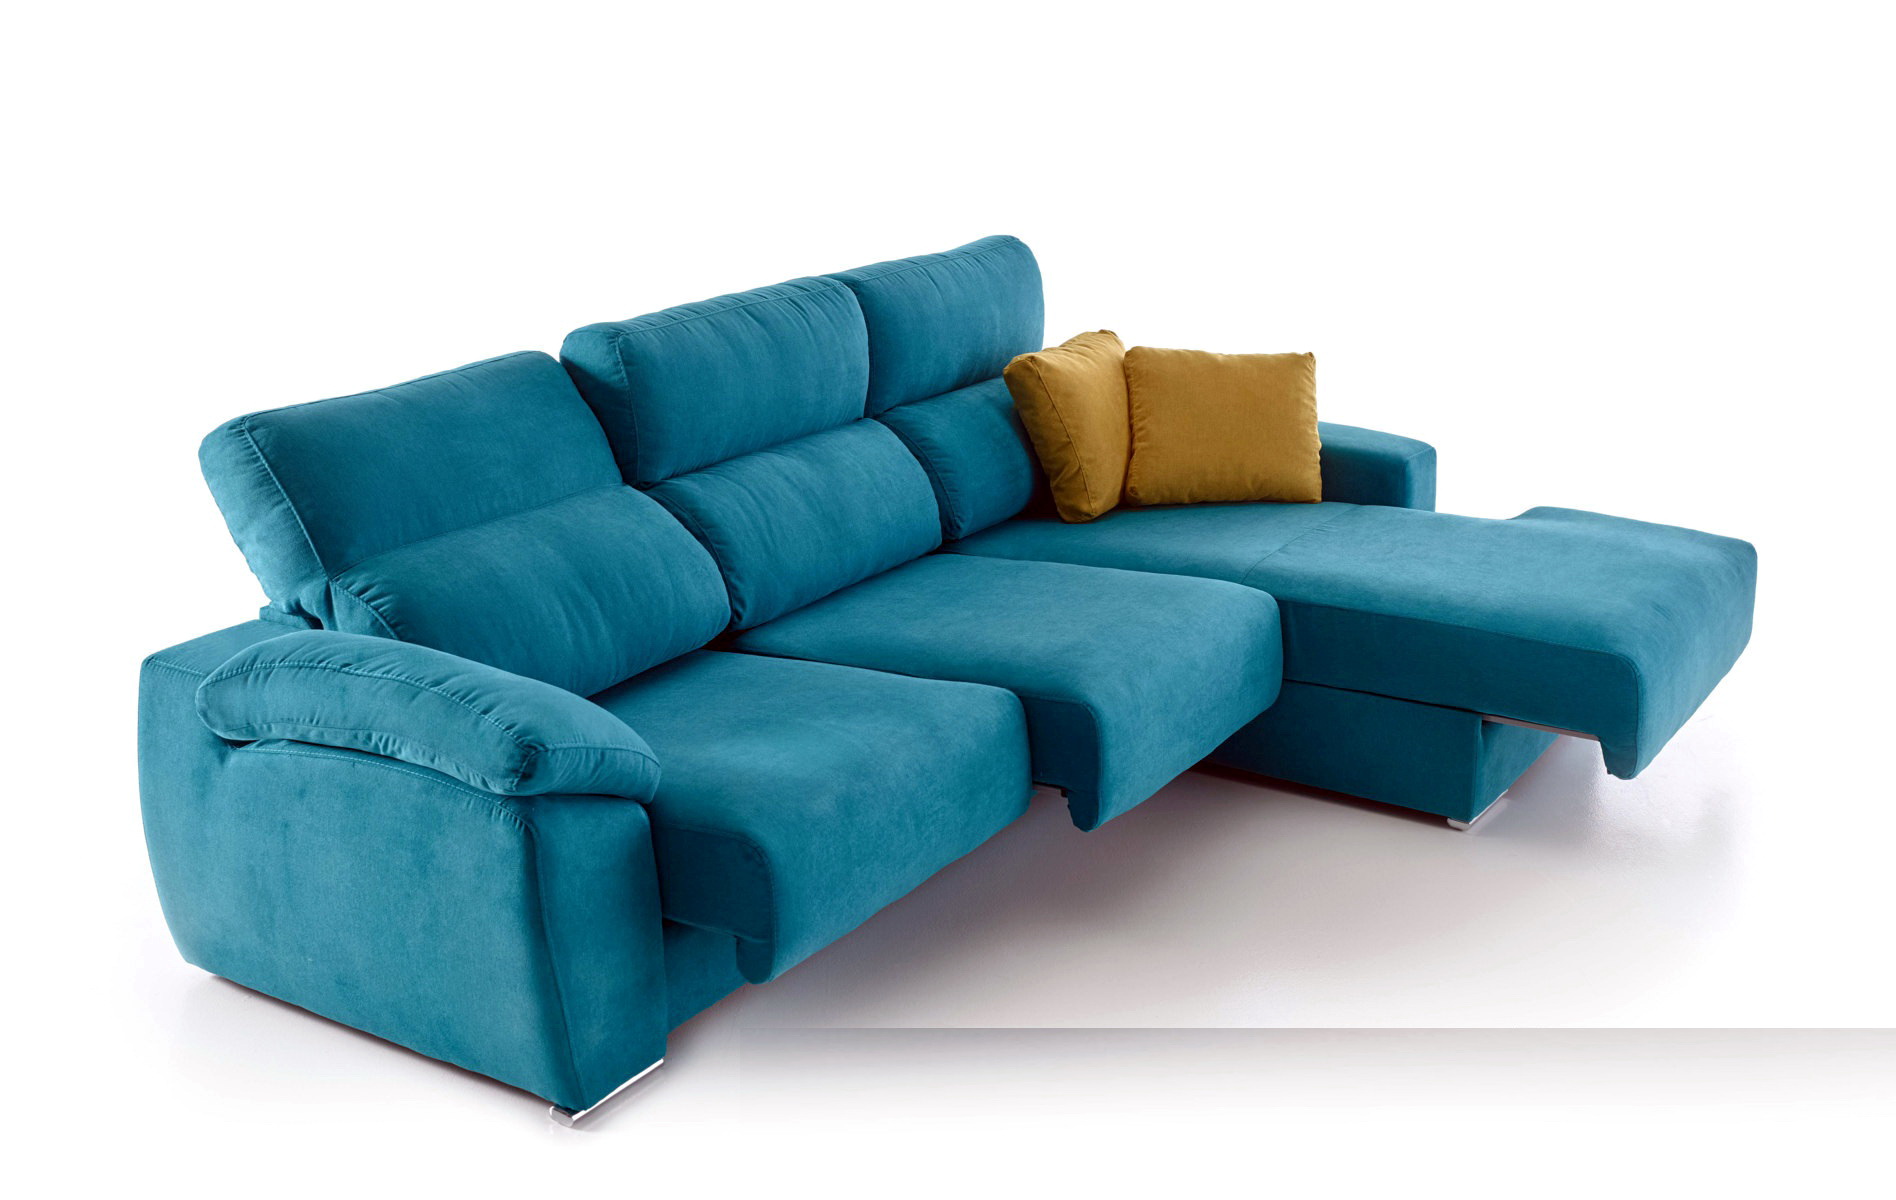 FAN sofá modular asientos extraibles by Vizcaíno Tapizados en muebles antoñán® León (3)